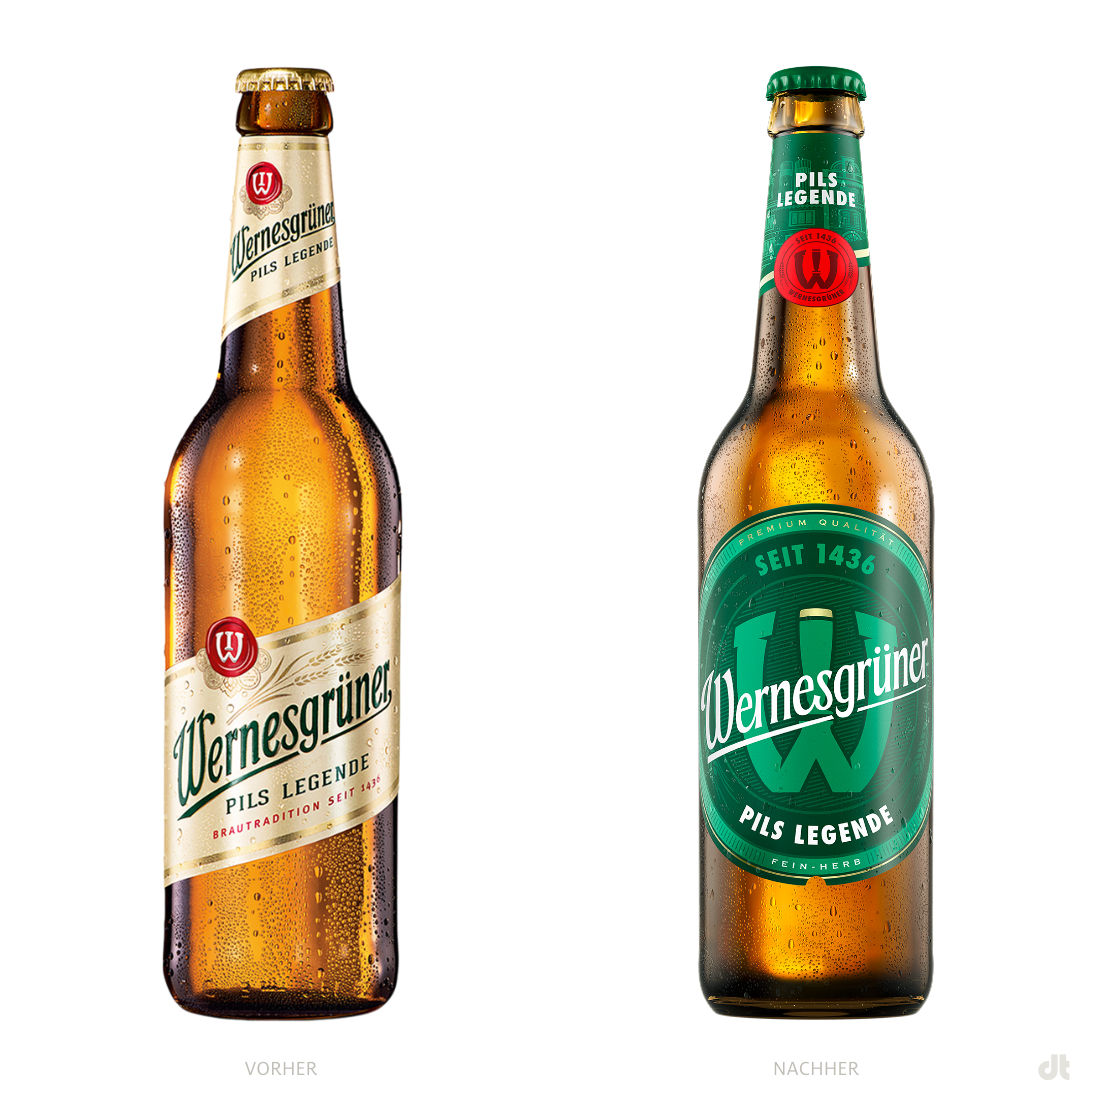 Wernesgrüner Pils Flasche – vorher und nachher, Bildquelle: Carlsberg, Bildmontage: dt